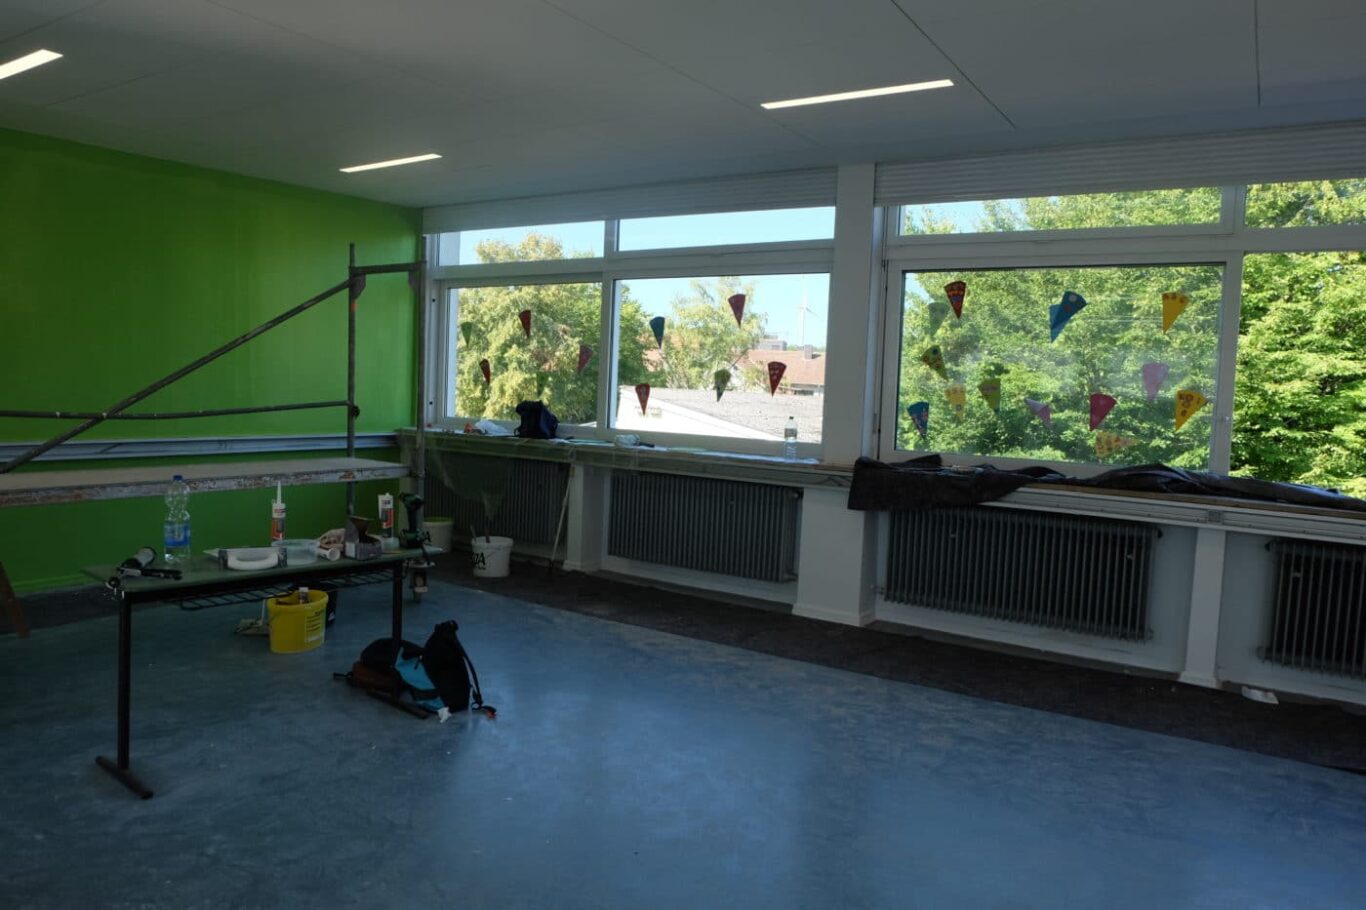 Aula der Grundschule Heiligenwald